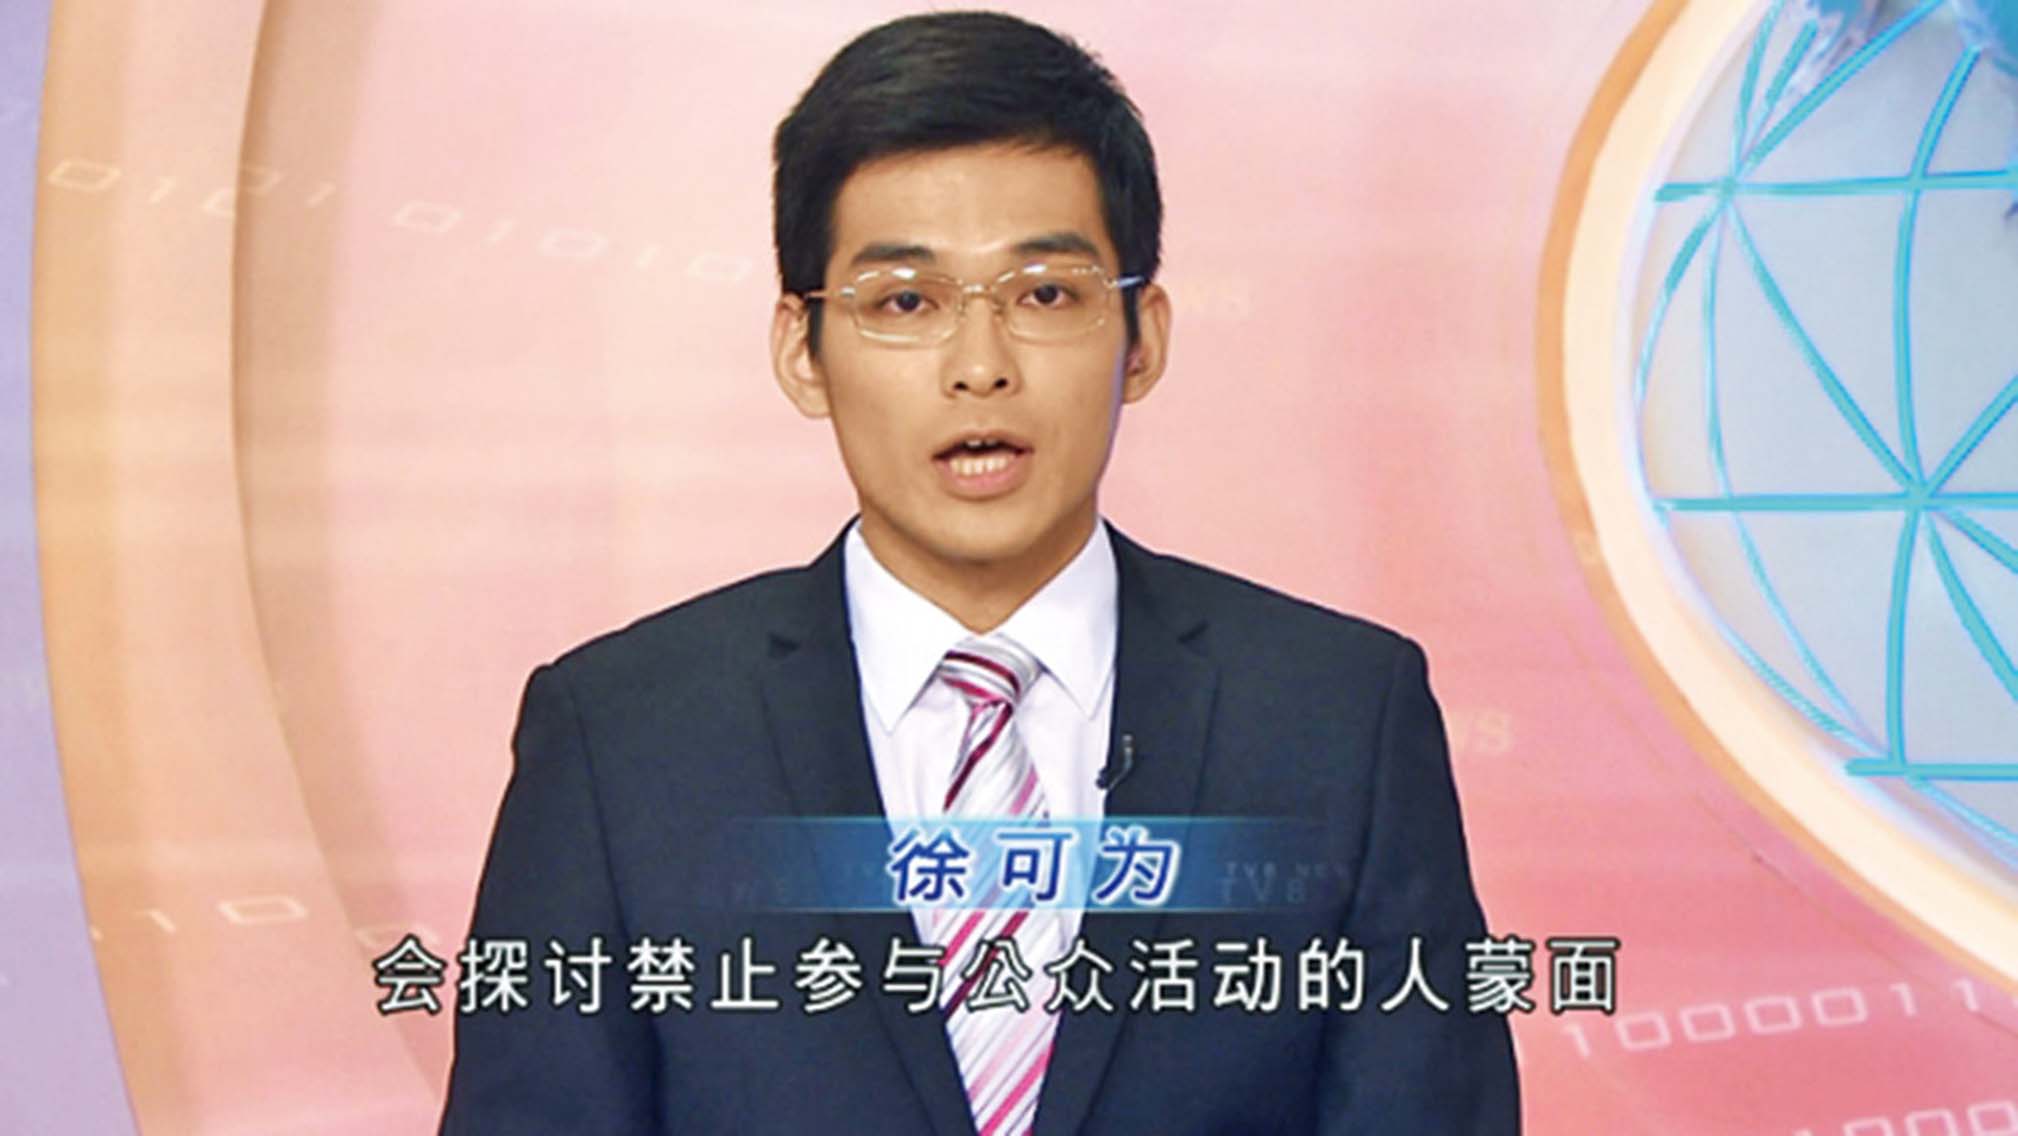 TVB新聞簡體字幕被批